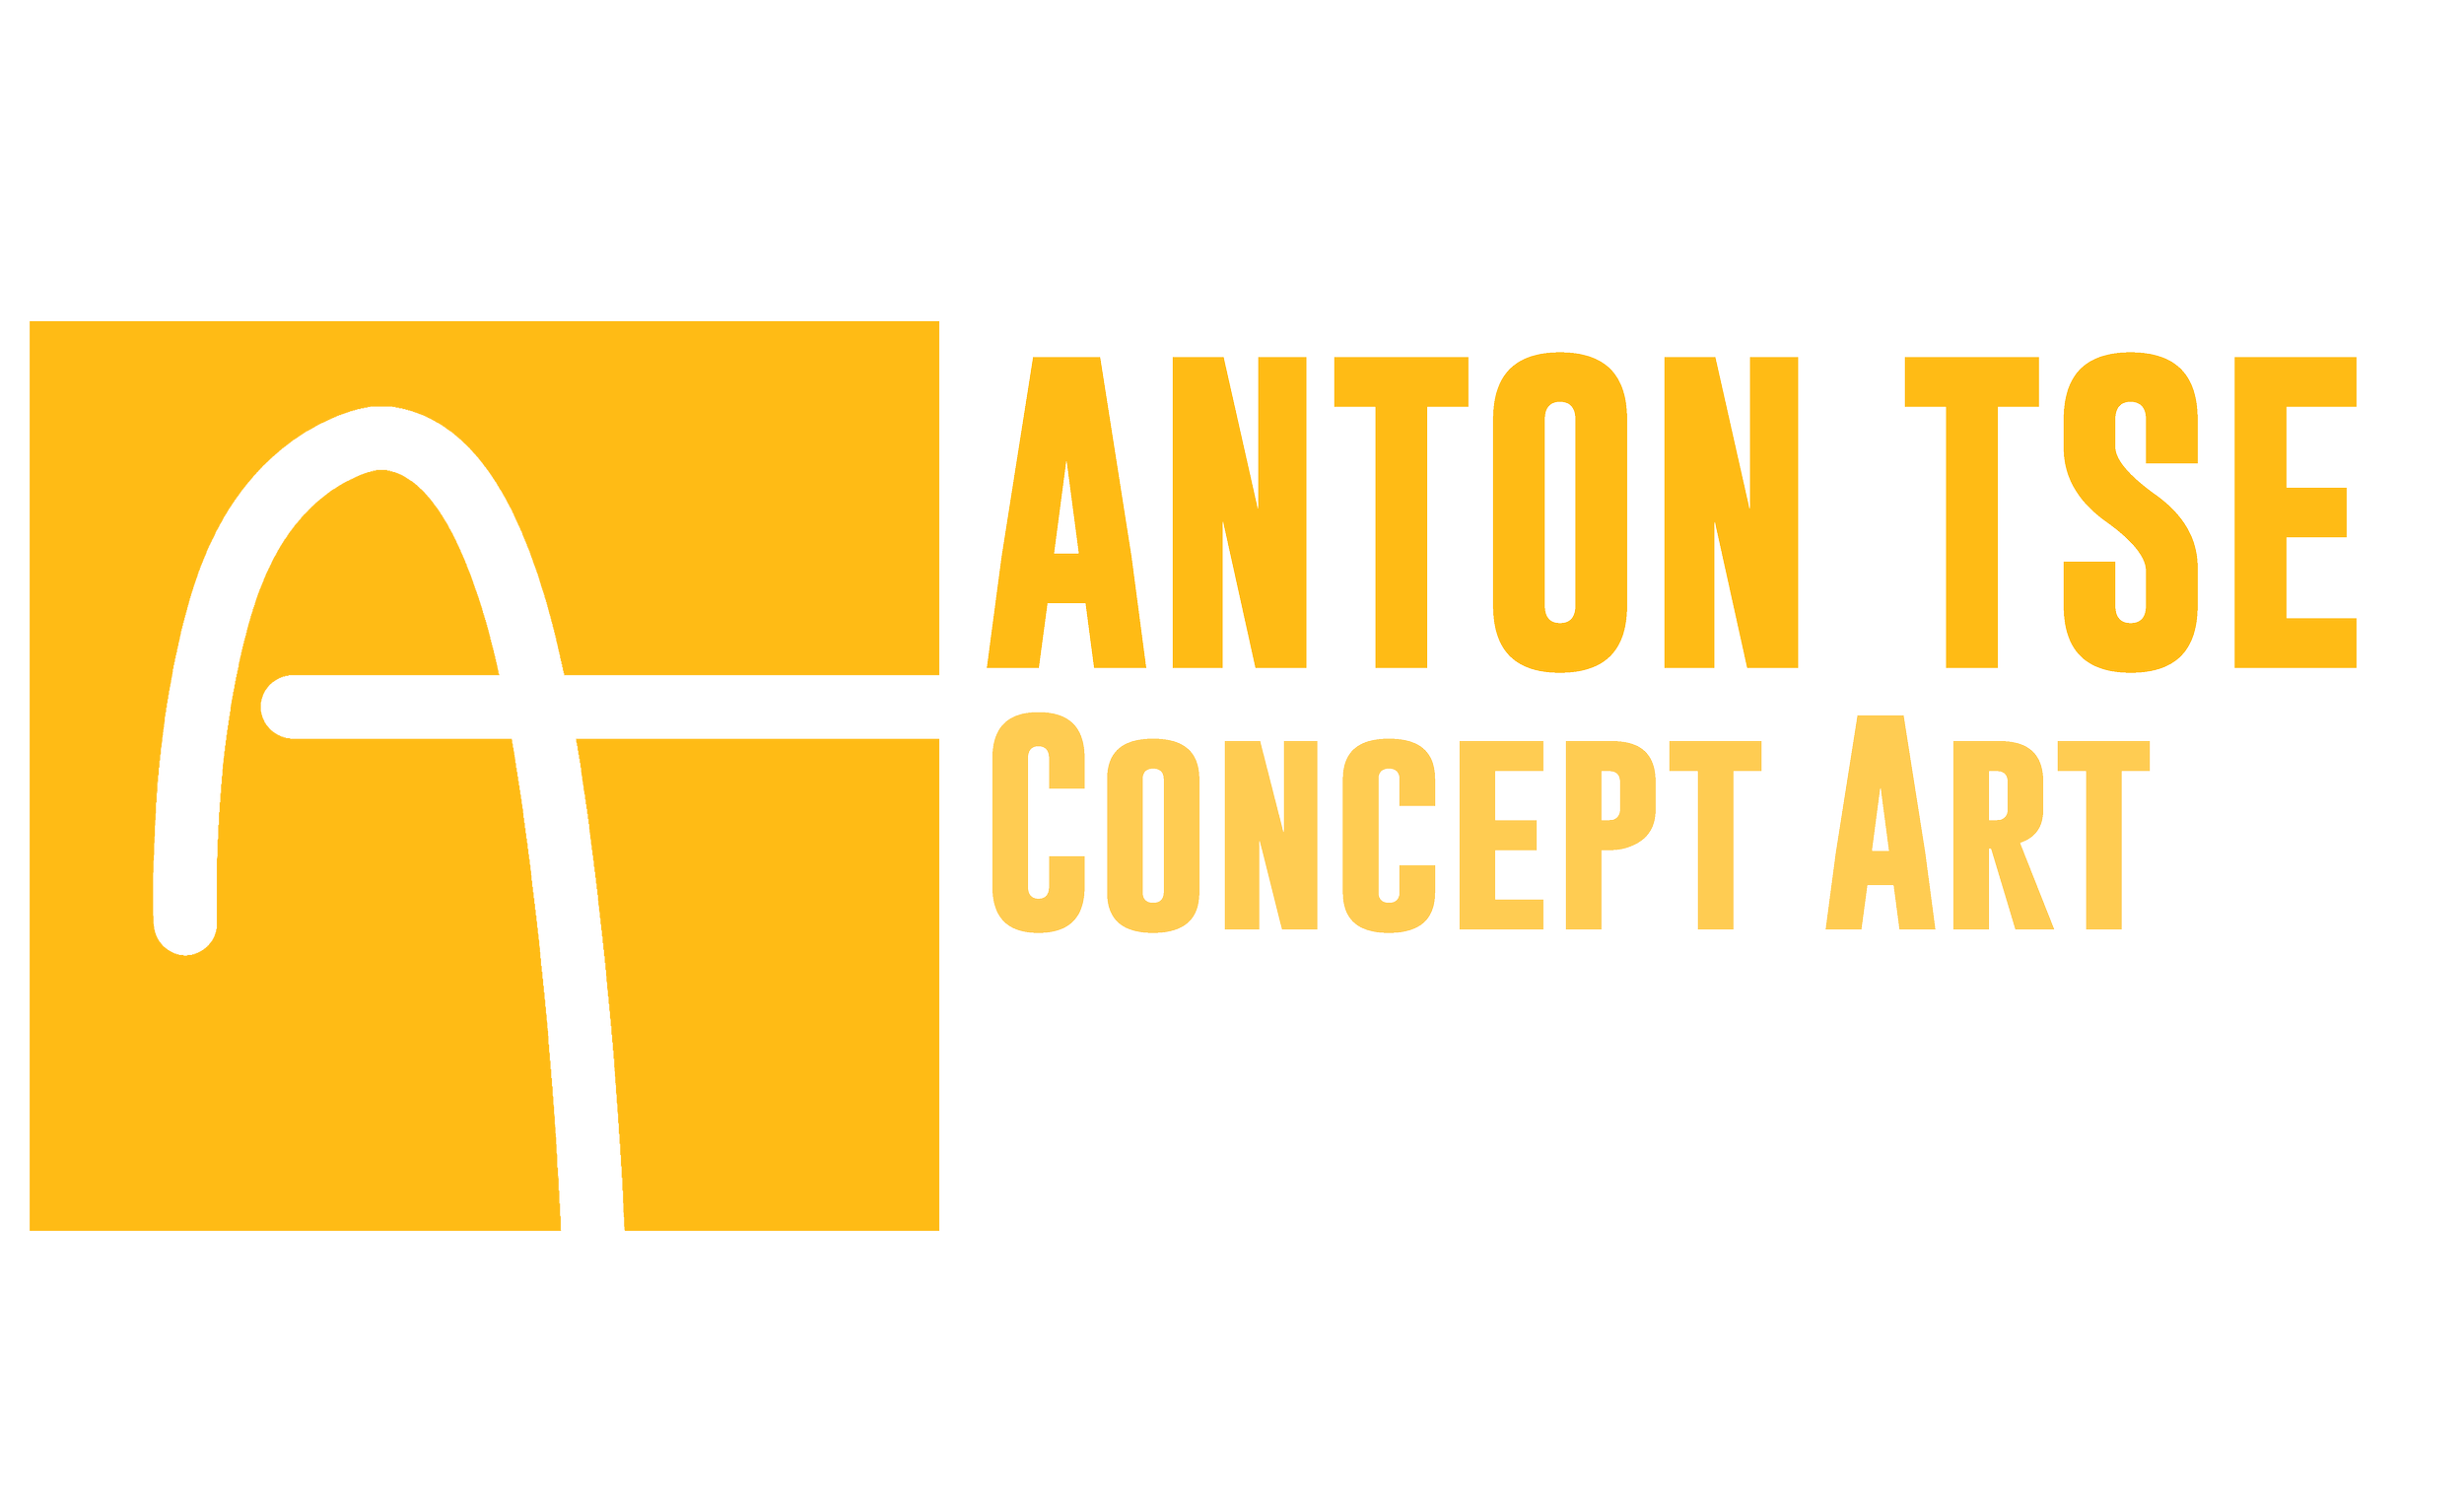 ANTON TSE